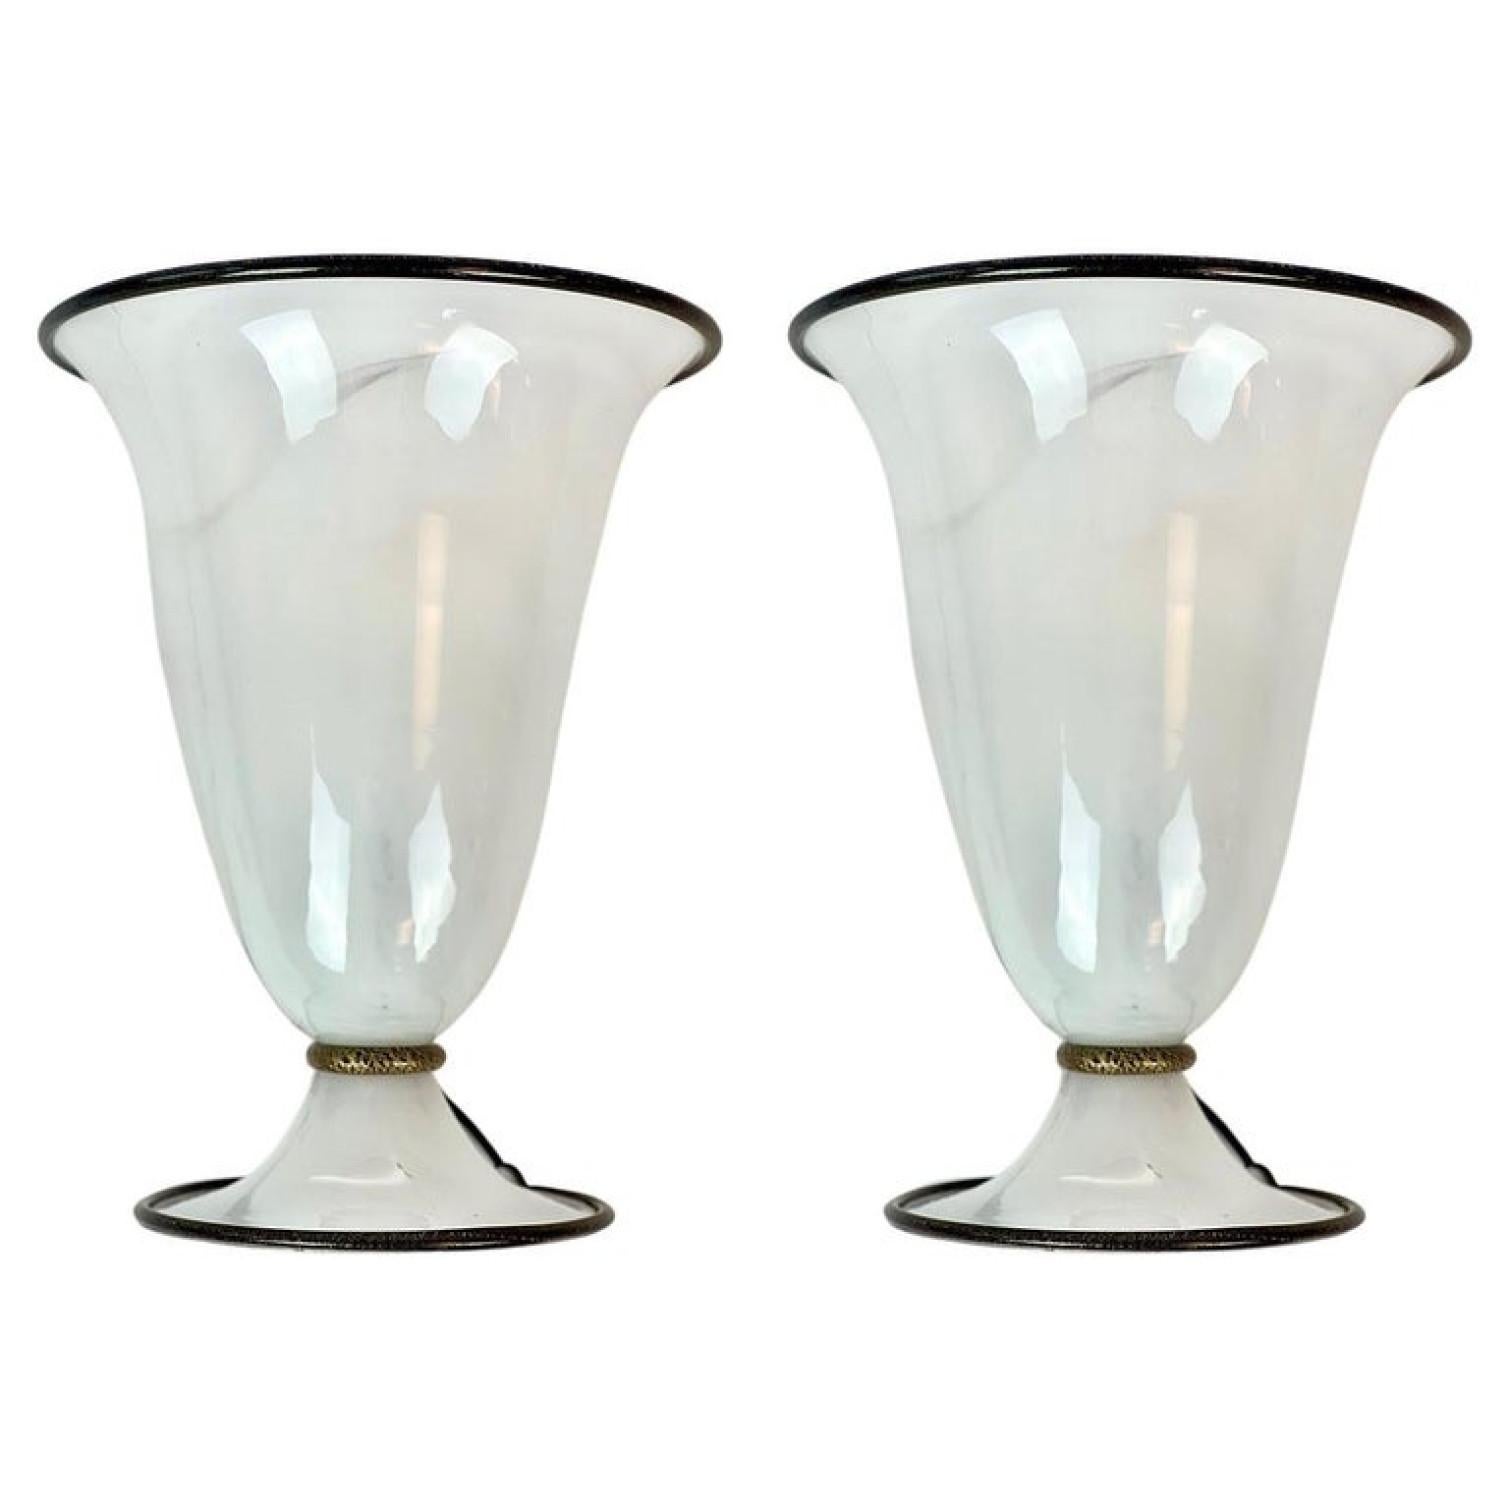 1 des 2 lampes de table Post Modern fabriquées par Barovier&Toso dans les années 1990 à Murano, Italie. La pièce a un corps en verre de Murano blanc opaque avec des bords dorés et est en excellent état vintage. 

Veuillez noter que le prix est pour